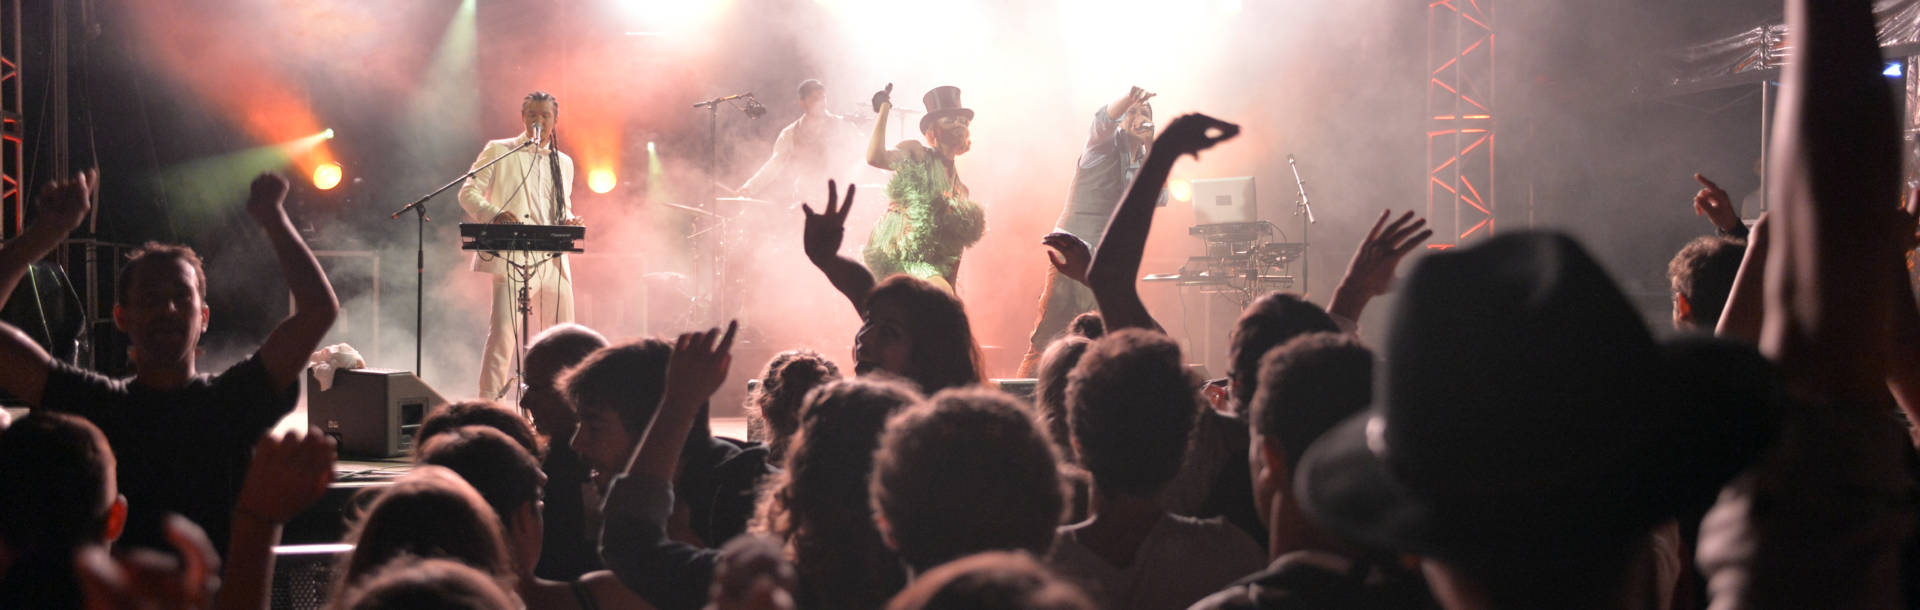 Jeudis niortais, concerts gratuits l'été en plein centre de Niort